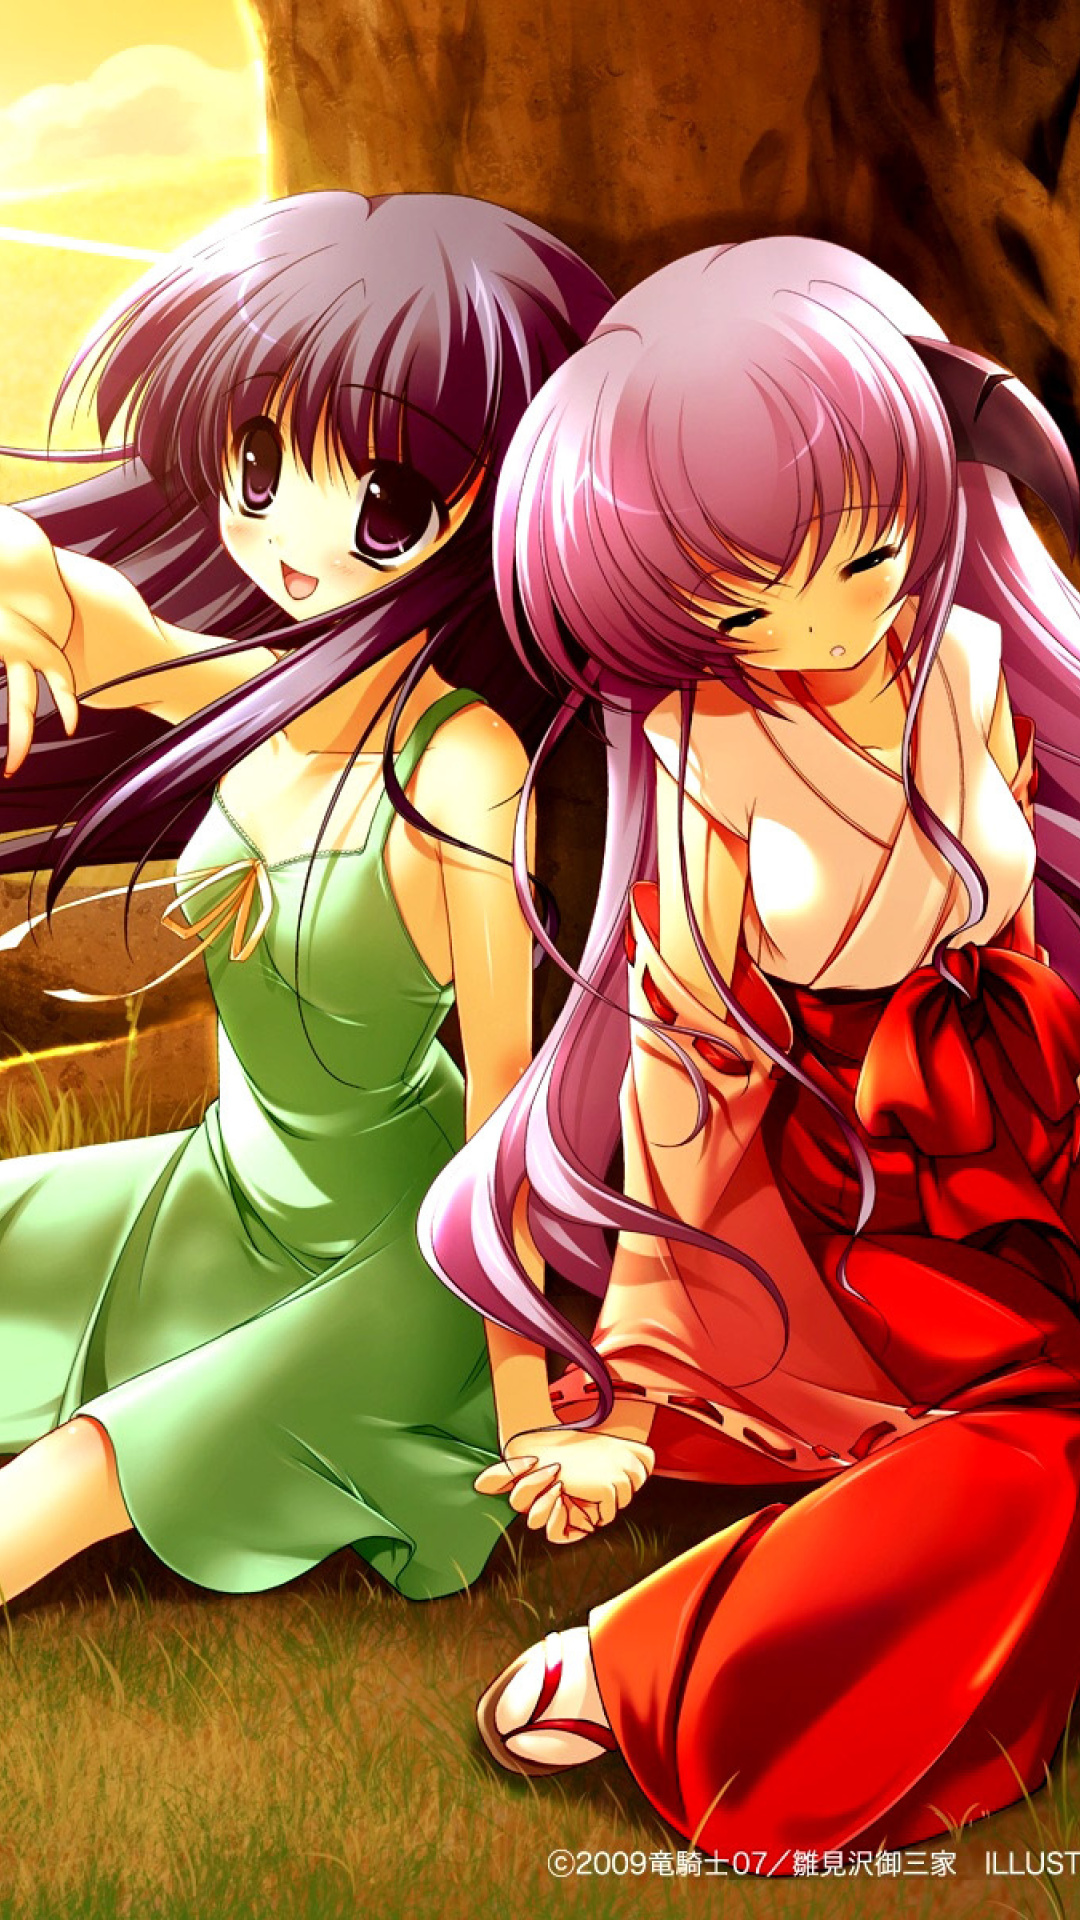 Hanyu and Rika in Higurashi screenshot #1 1080x1920